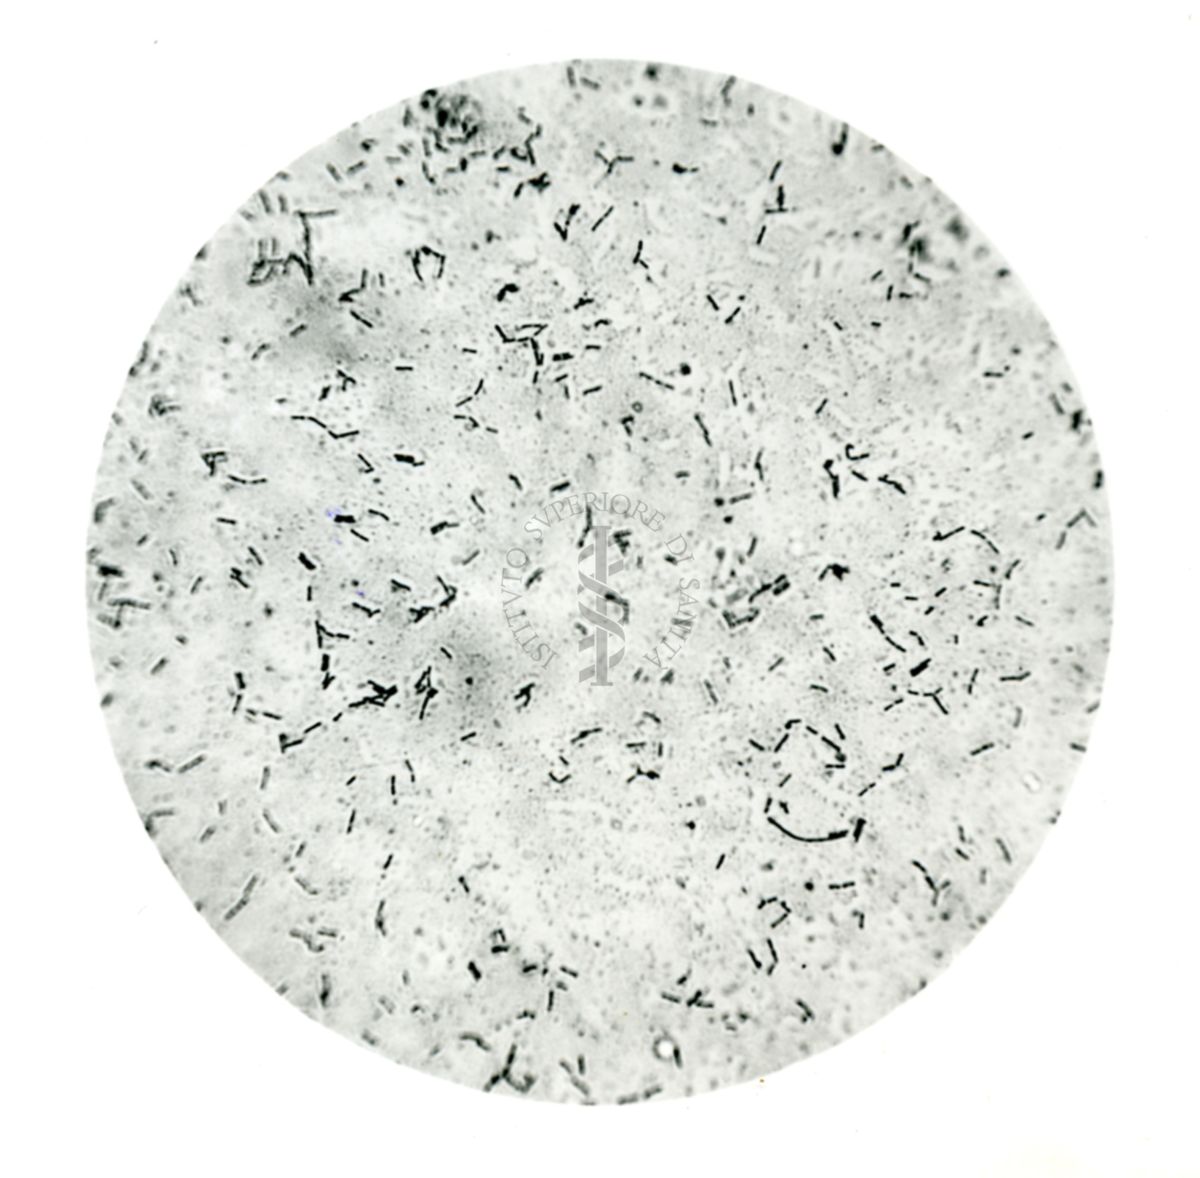 Preparato microscopico di bacillo acidofilo